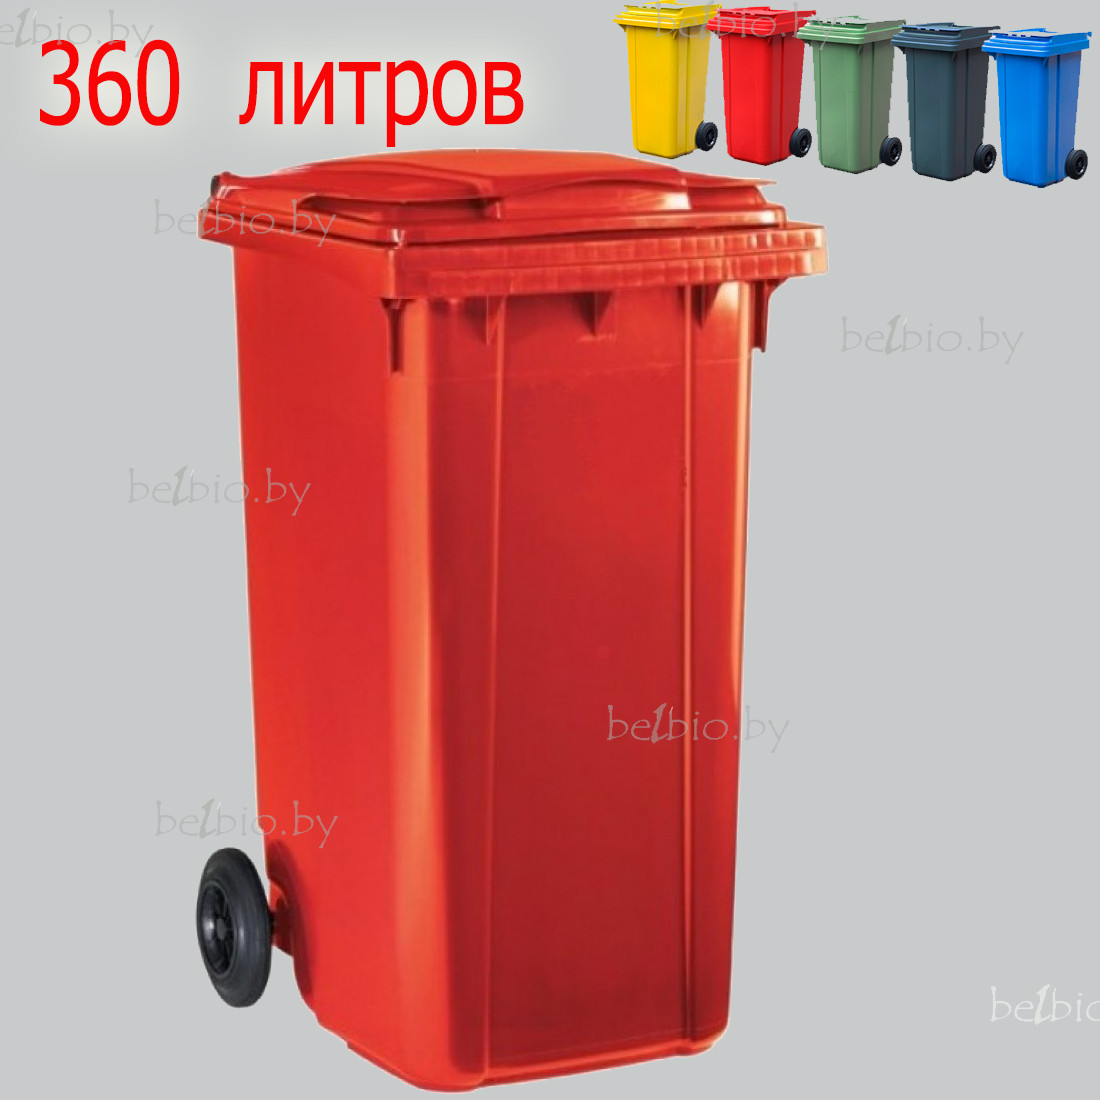 Бак для мусора 360л красный пластиковый на колесах